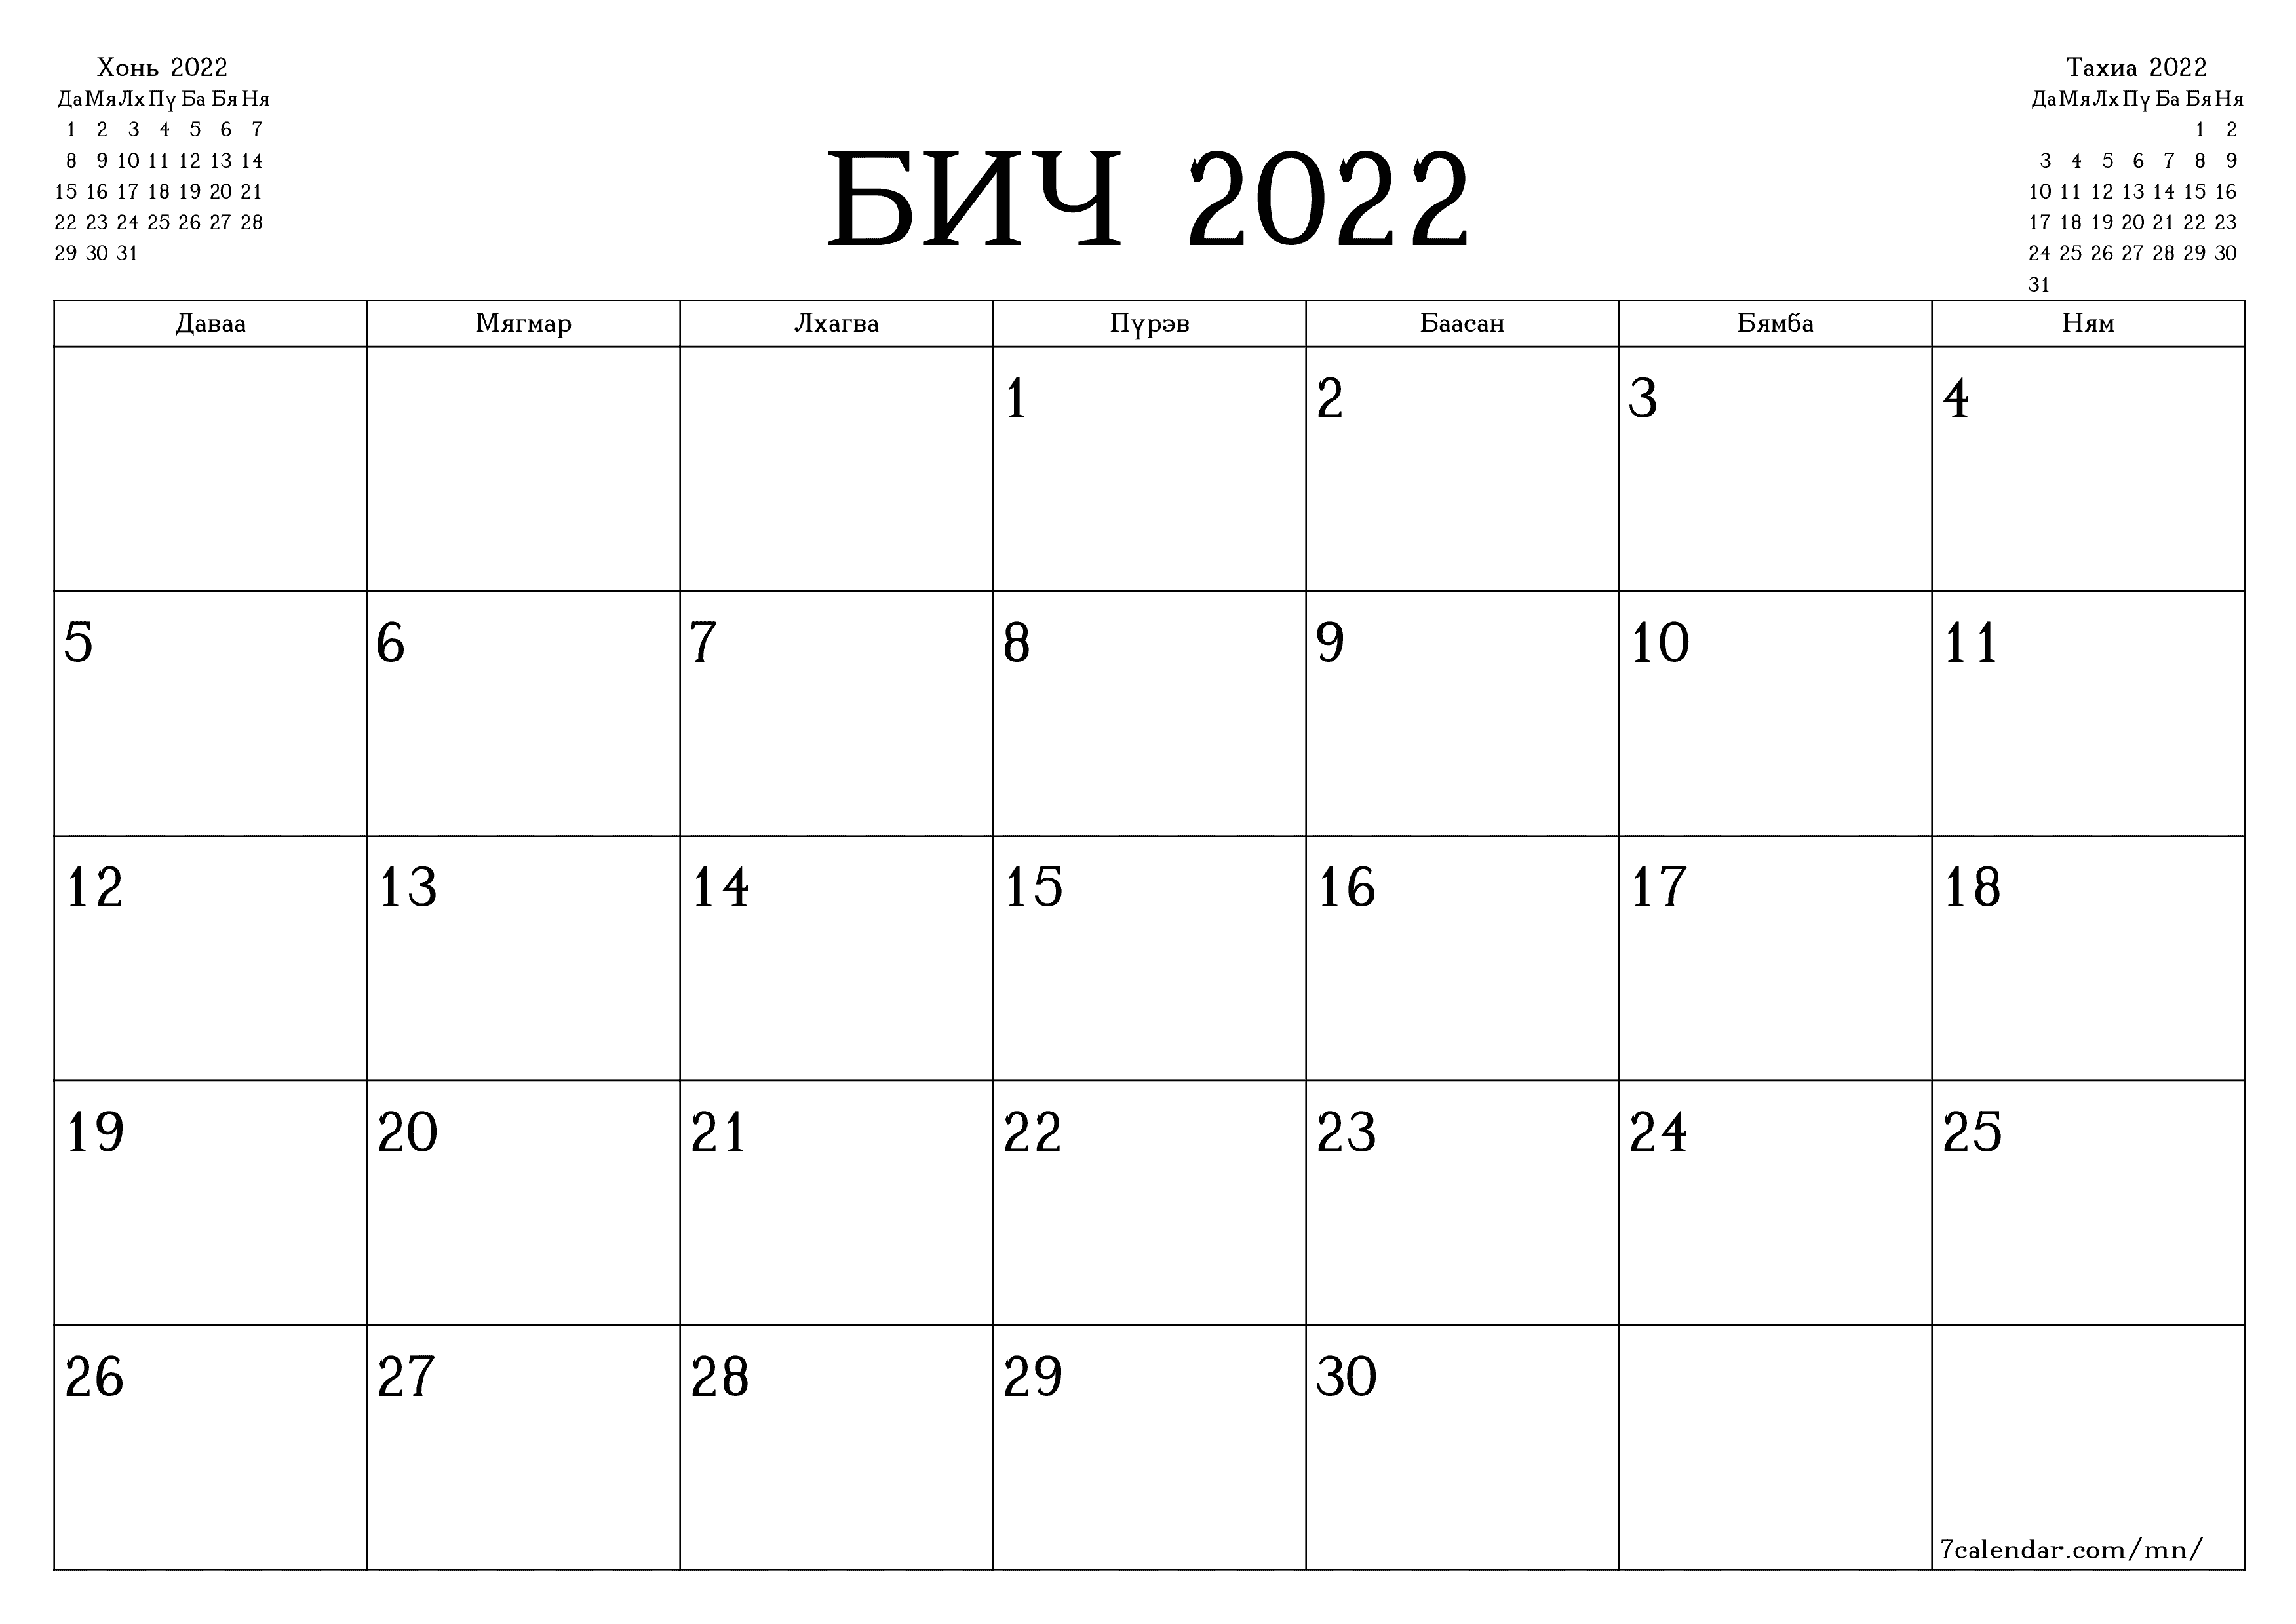 хэвлэх боломжтой ханын календарийн загвар үнэгүй хэвтээ Сар бүр төлөвлөгч хуанли Бич (Бич) 2022